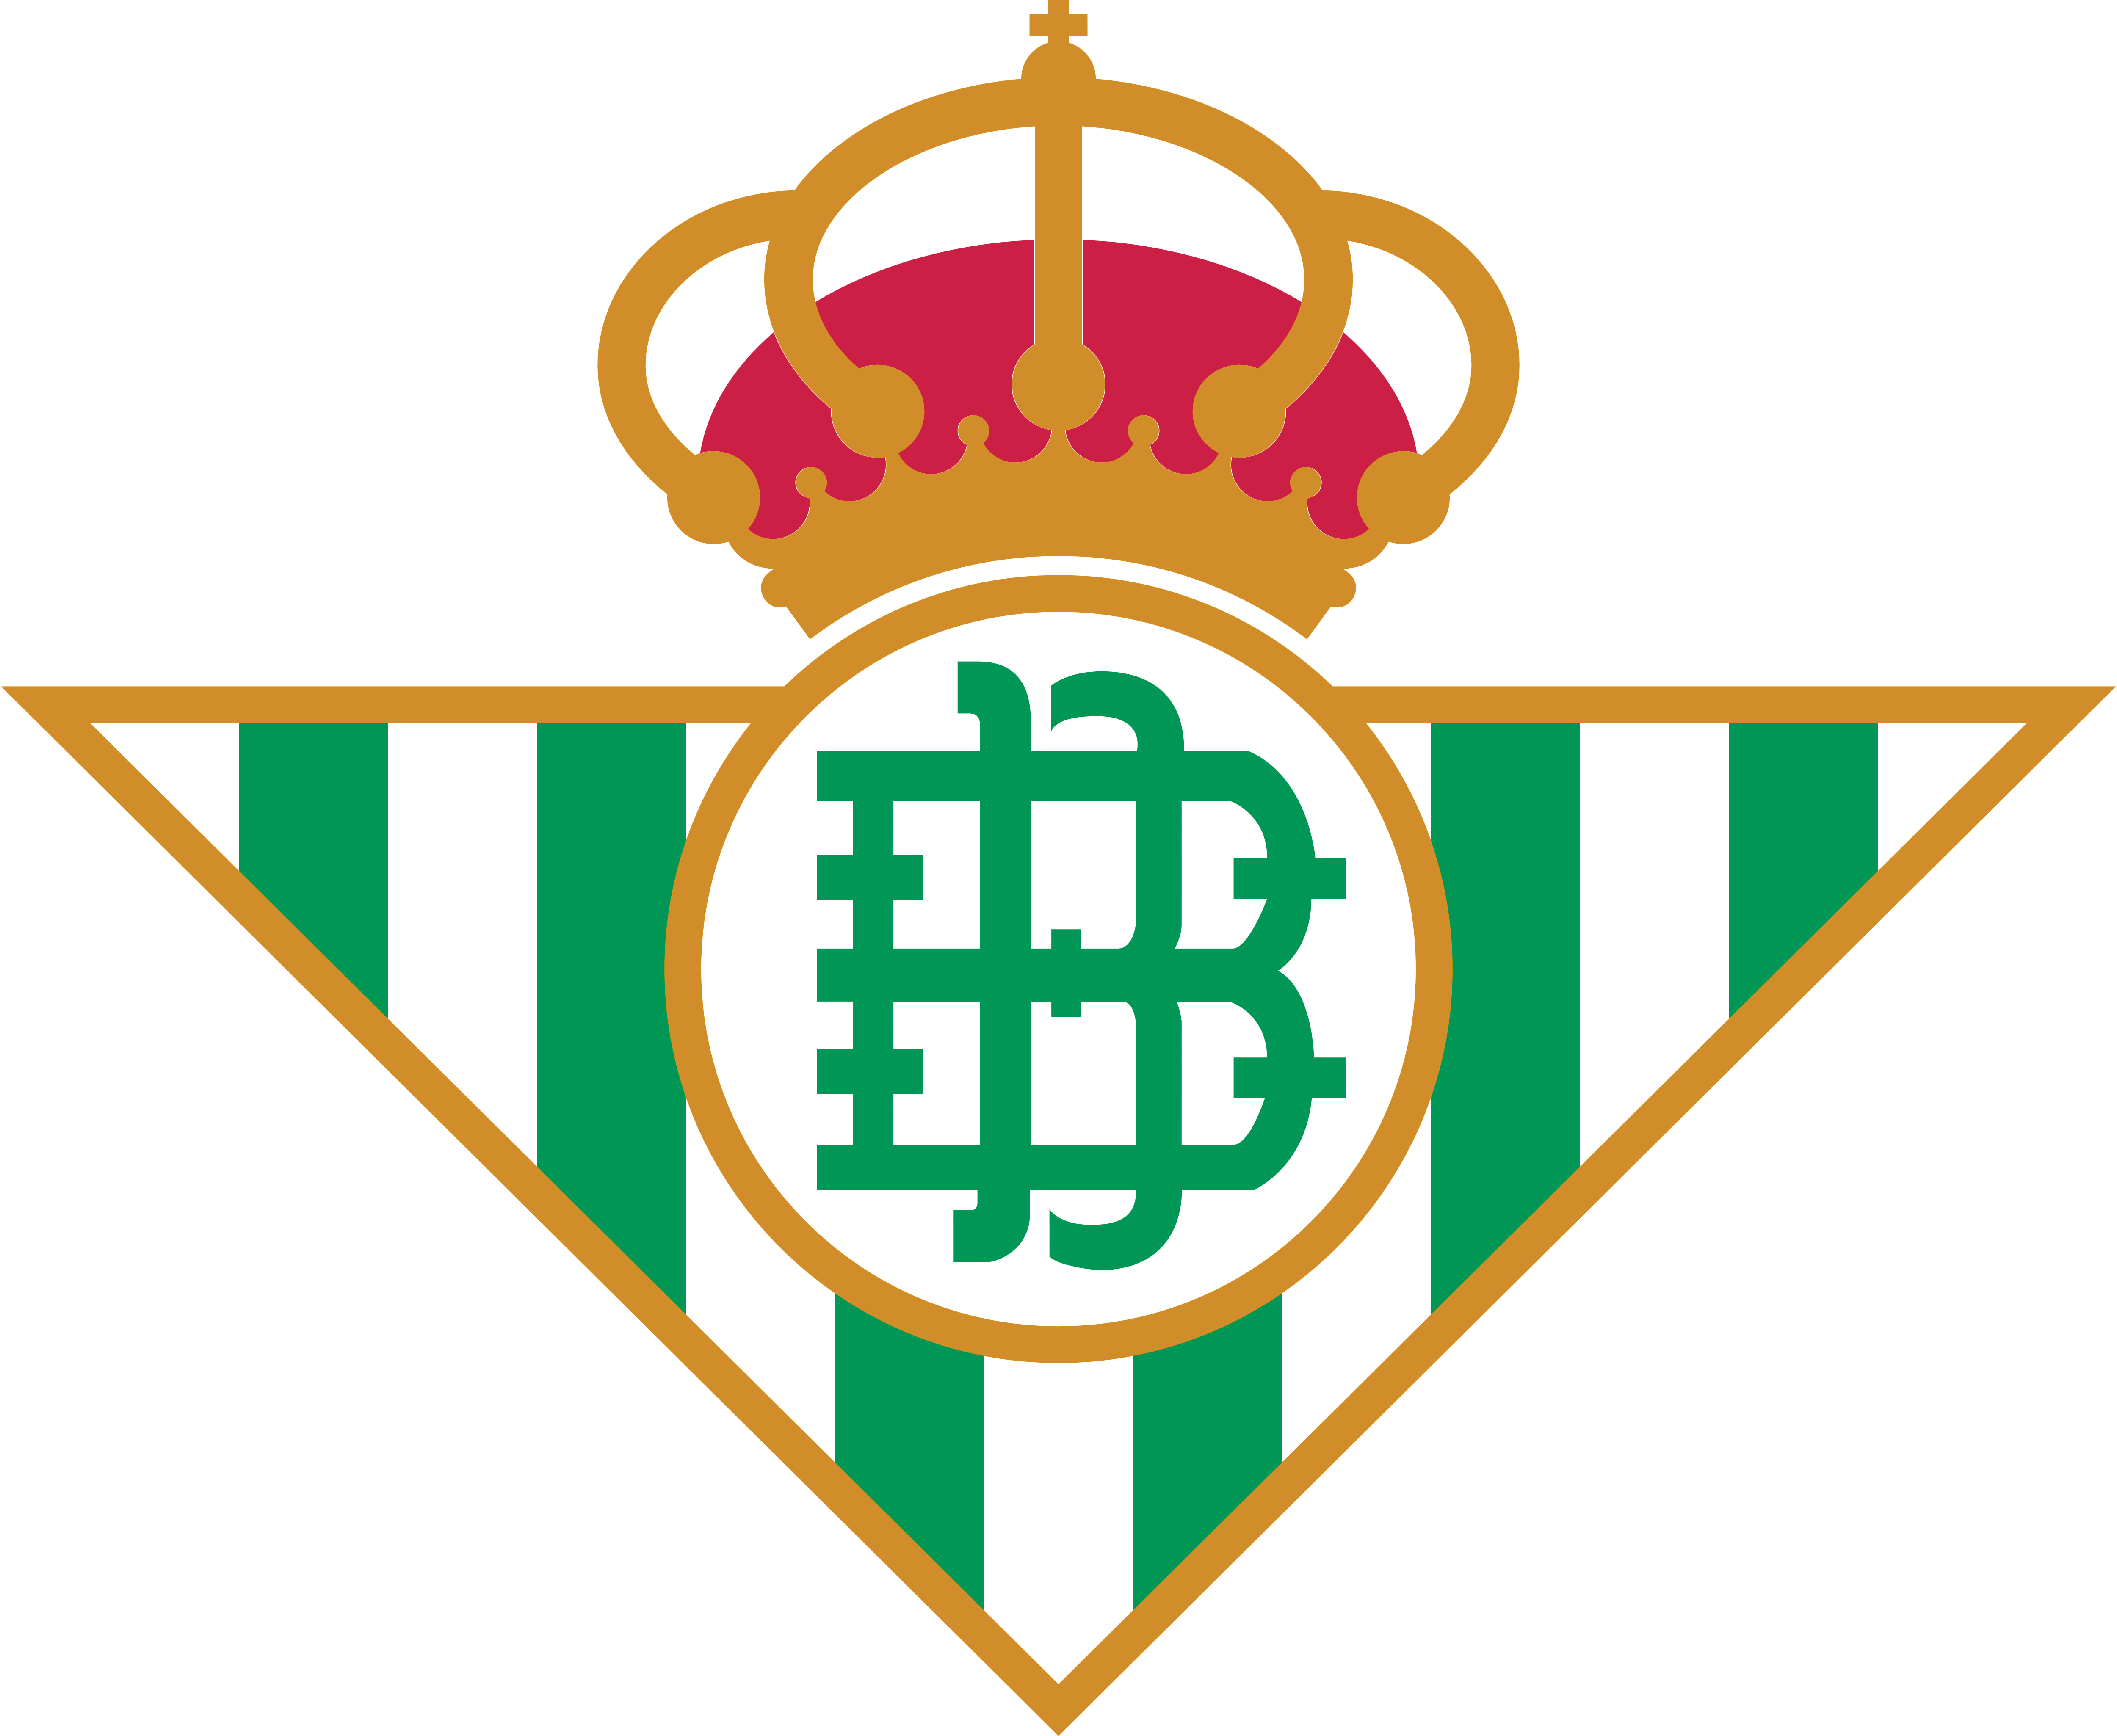 Real Betis – Logos Download